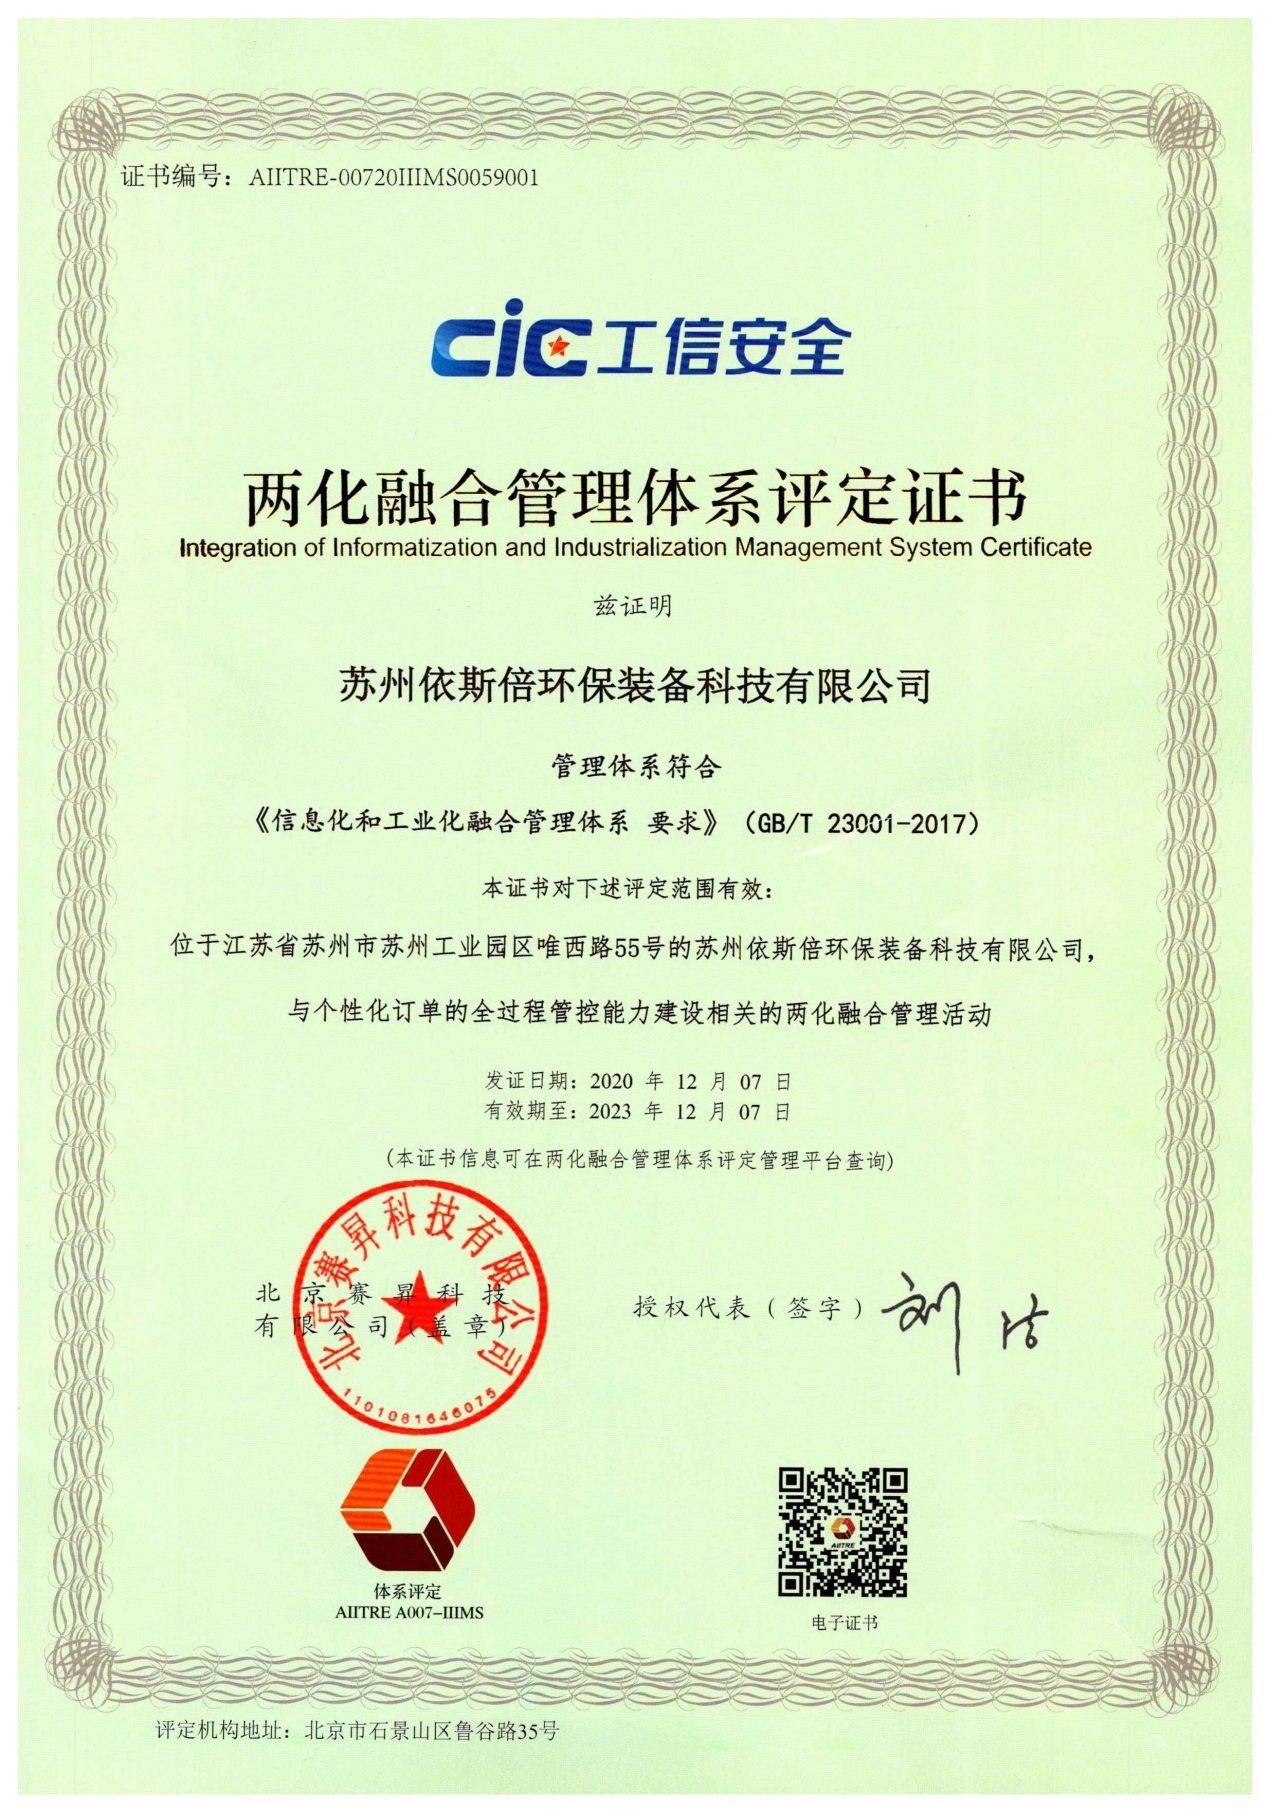 管家婆778849com受邀参加首届工控中国大会暨工业软件产业链供需对接会